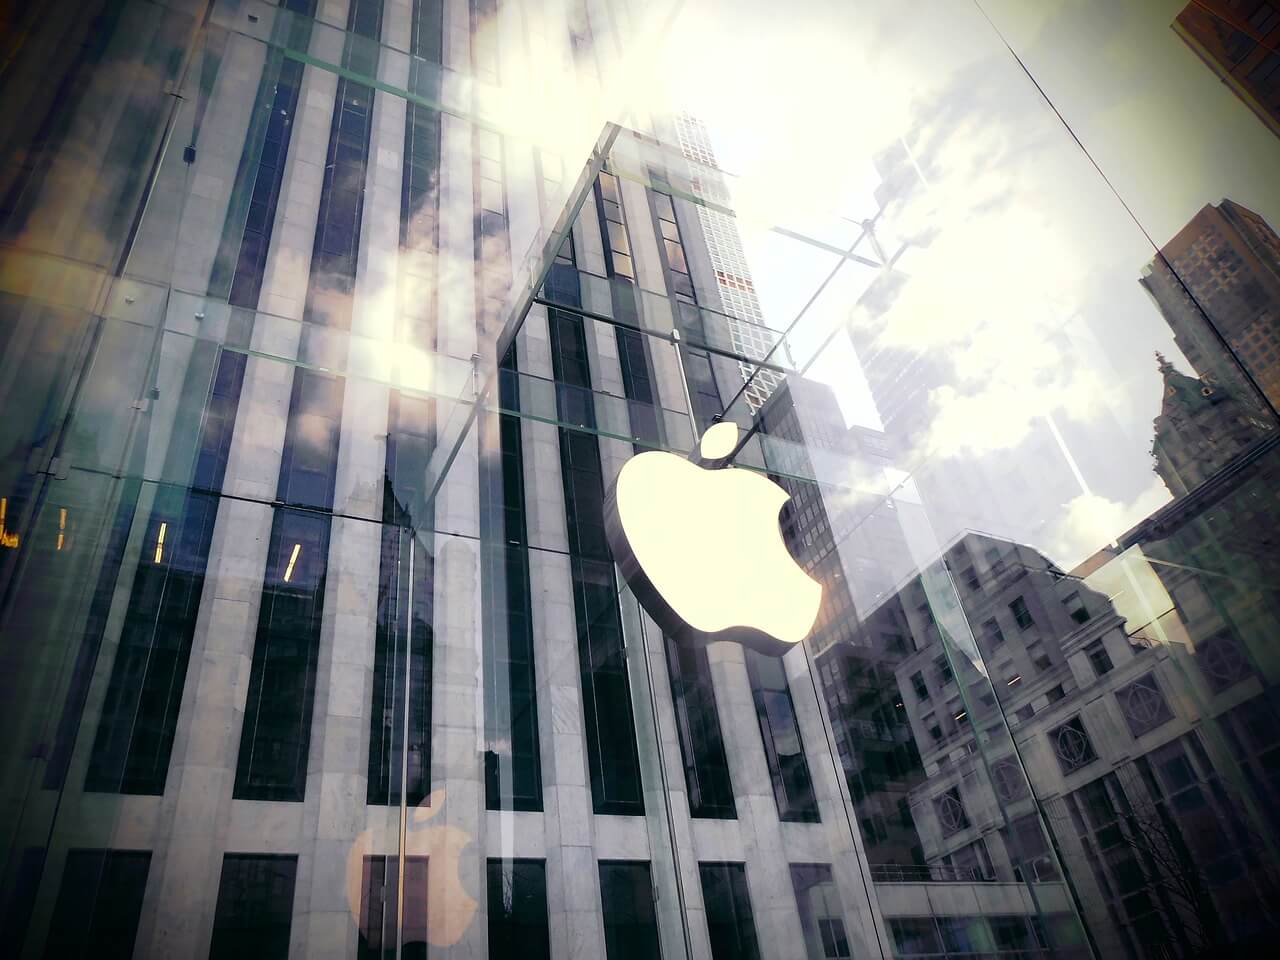 Ilustrační foto: Obchod firmy Apple v New Yorku. Zdroj: pixabay.com